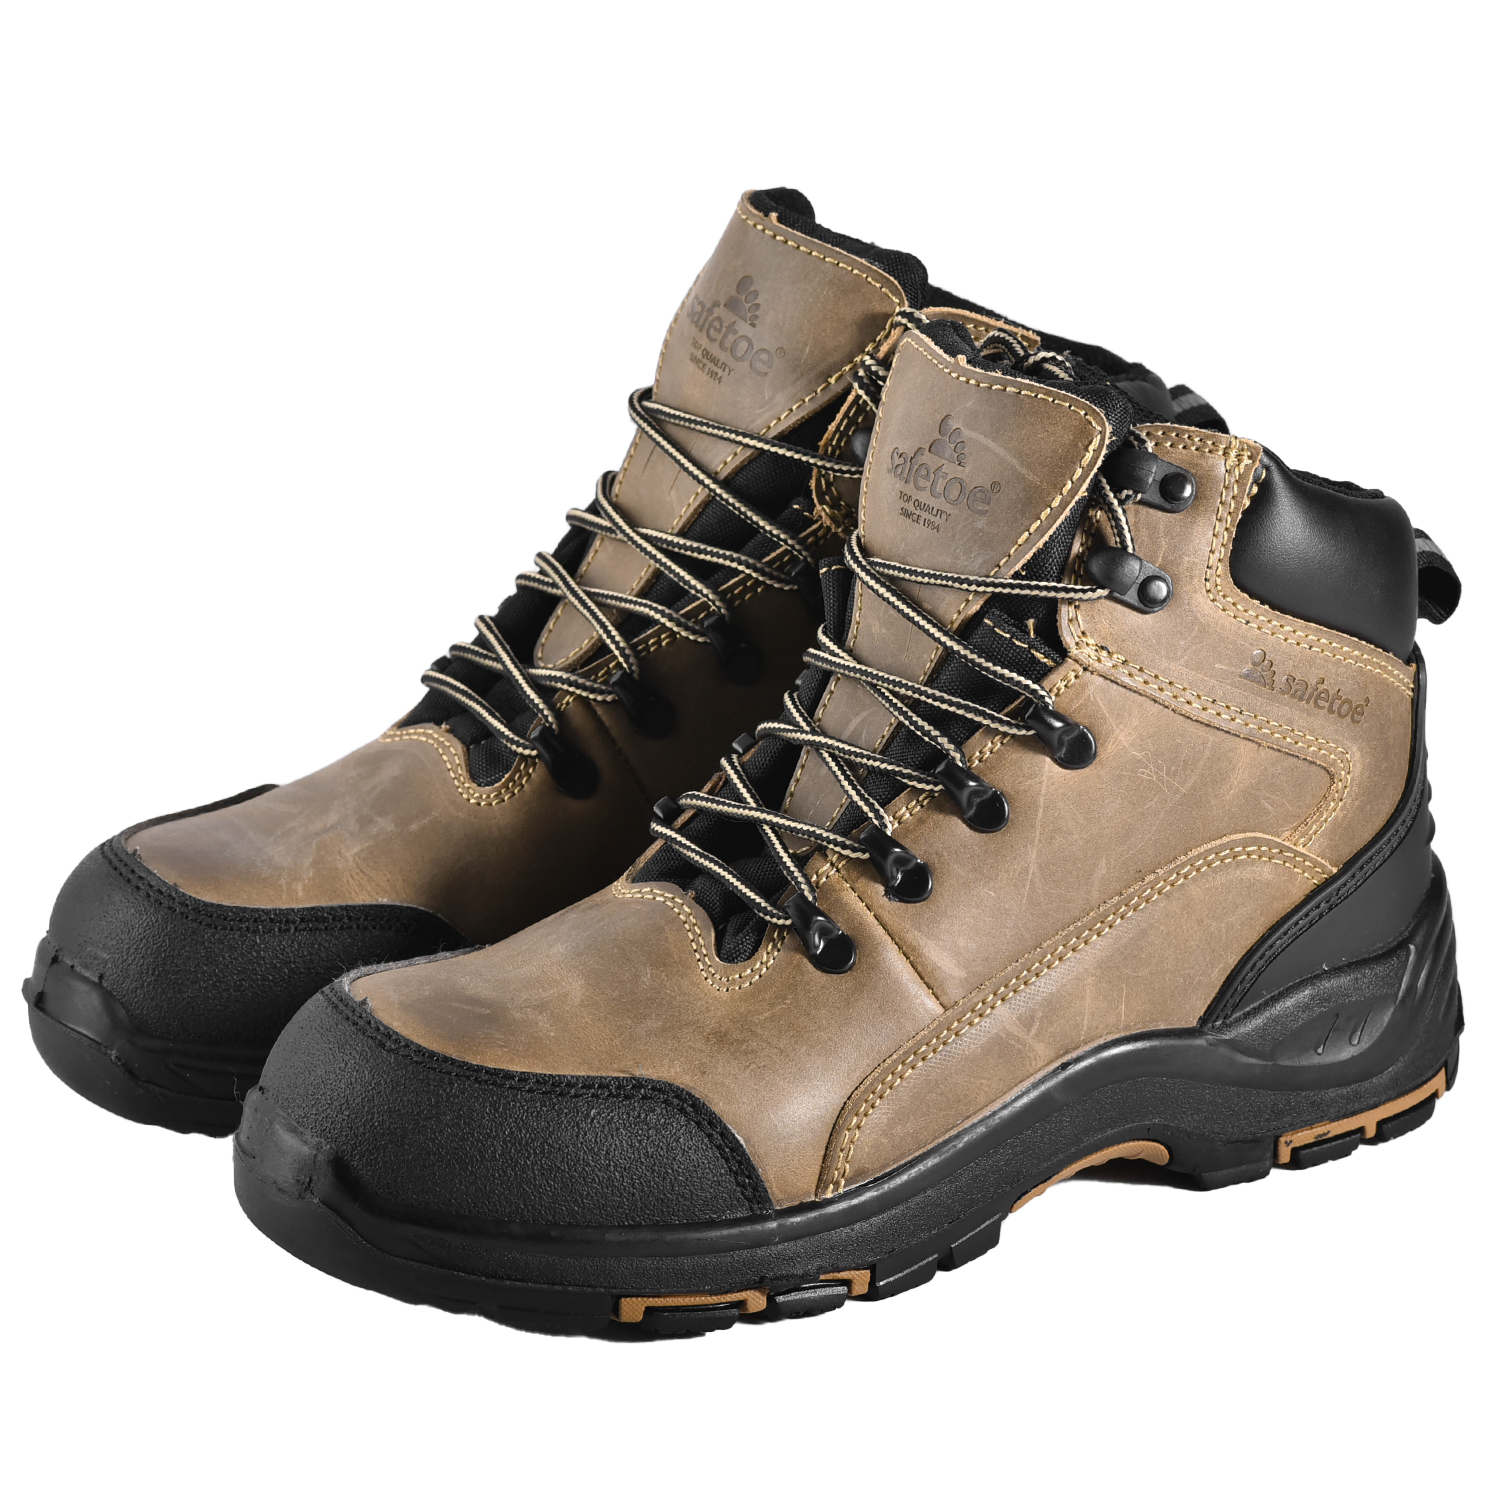 Le migliori scarpe antinfortunistiche per la conservazione in climi freddi Stivali da lavoro invernali M-8510